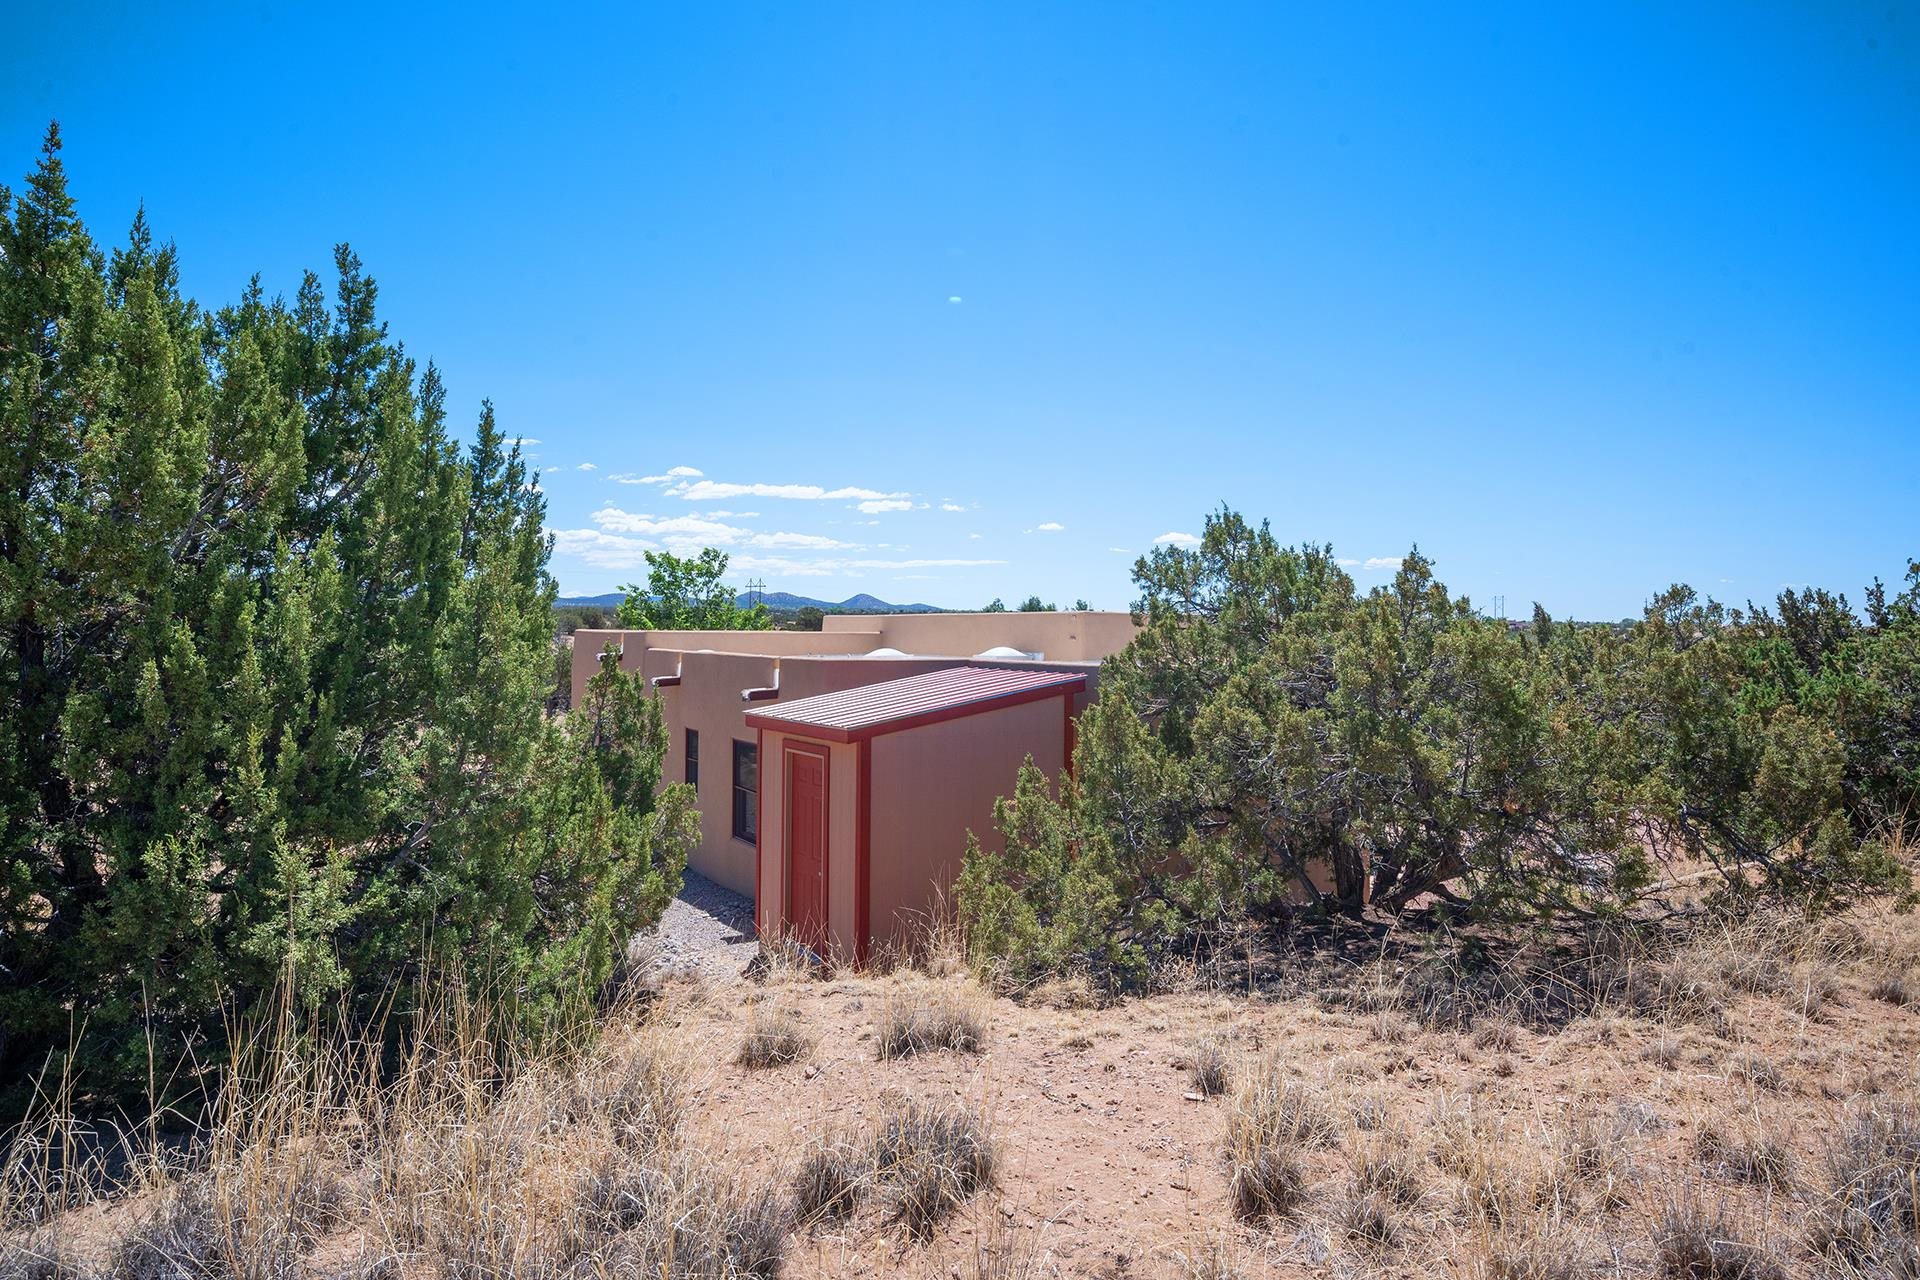 54 Encantado, Santa Fe, New Mexico 87508, 3 Bedrooms Bedrooms, ,2 BathroomsBathrooms,Residential,For Sale,54 Encantado,202202086